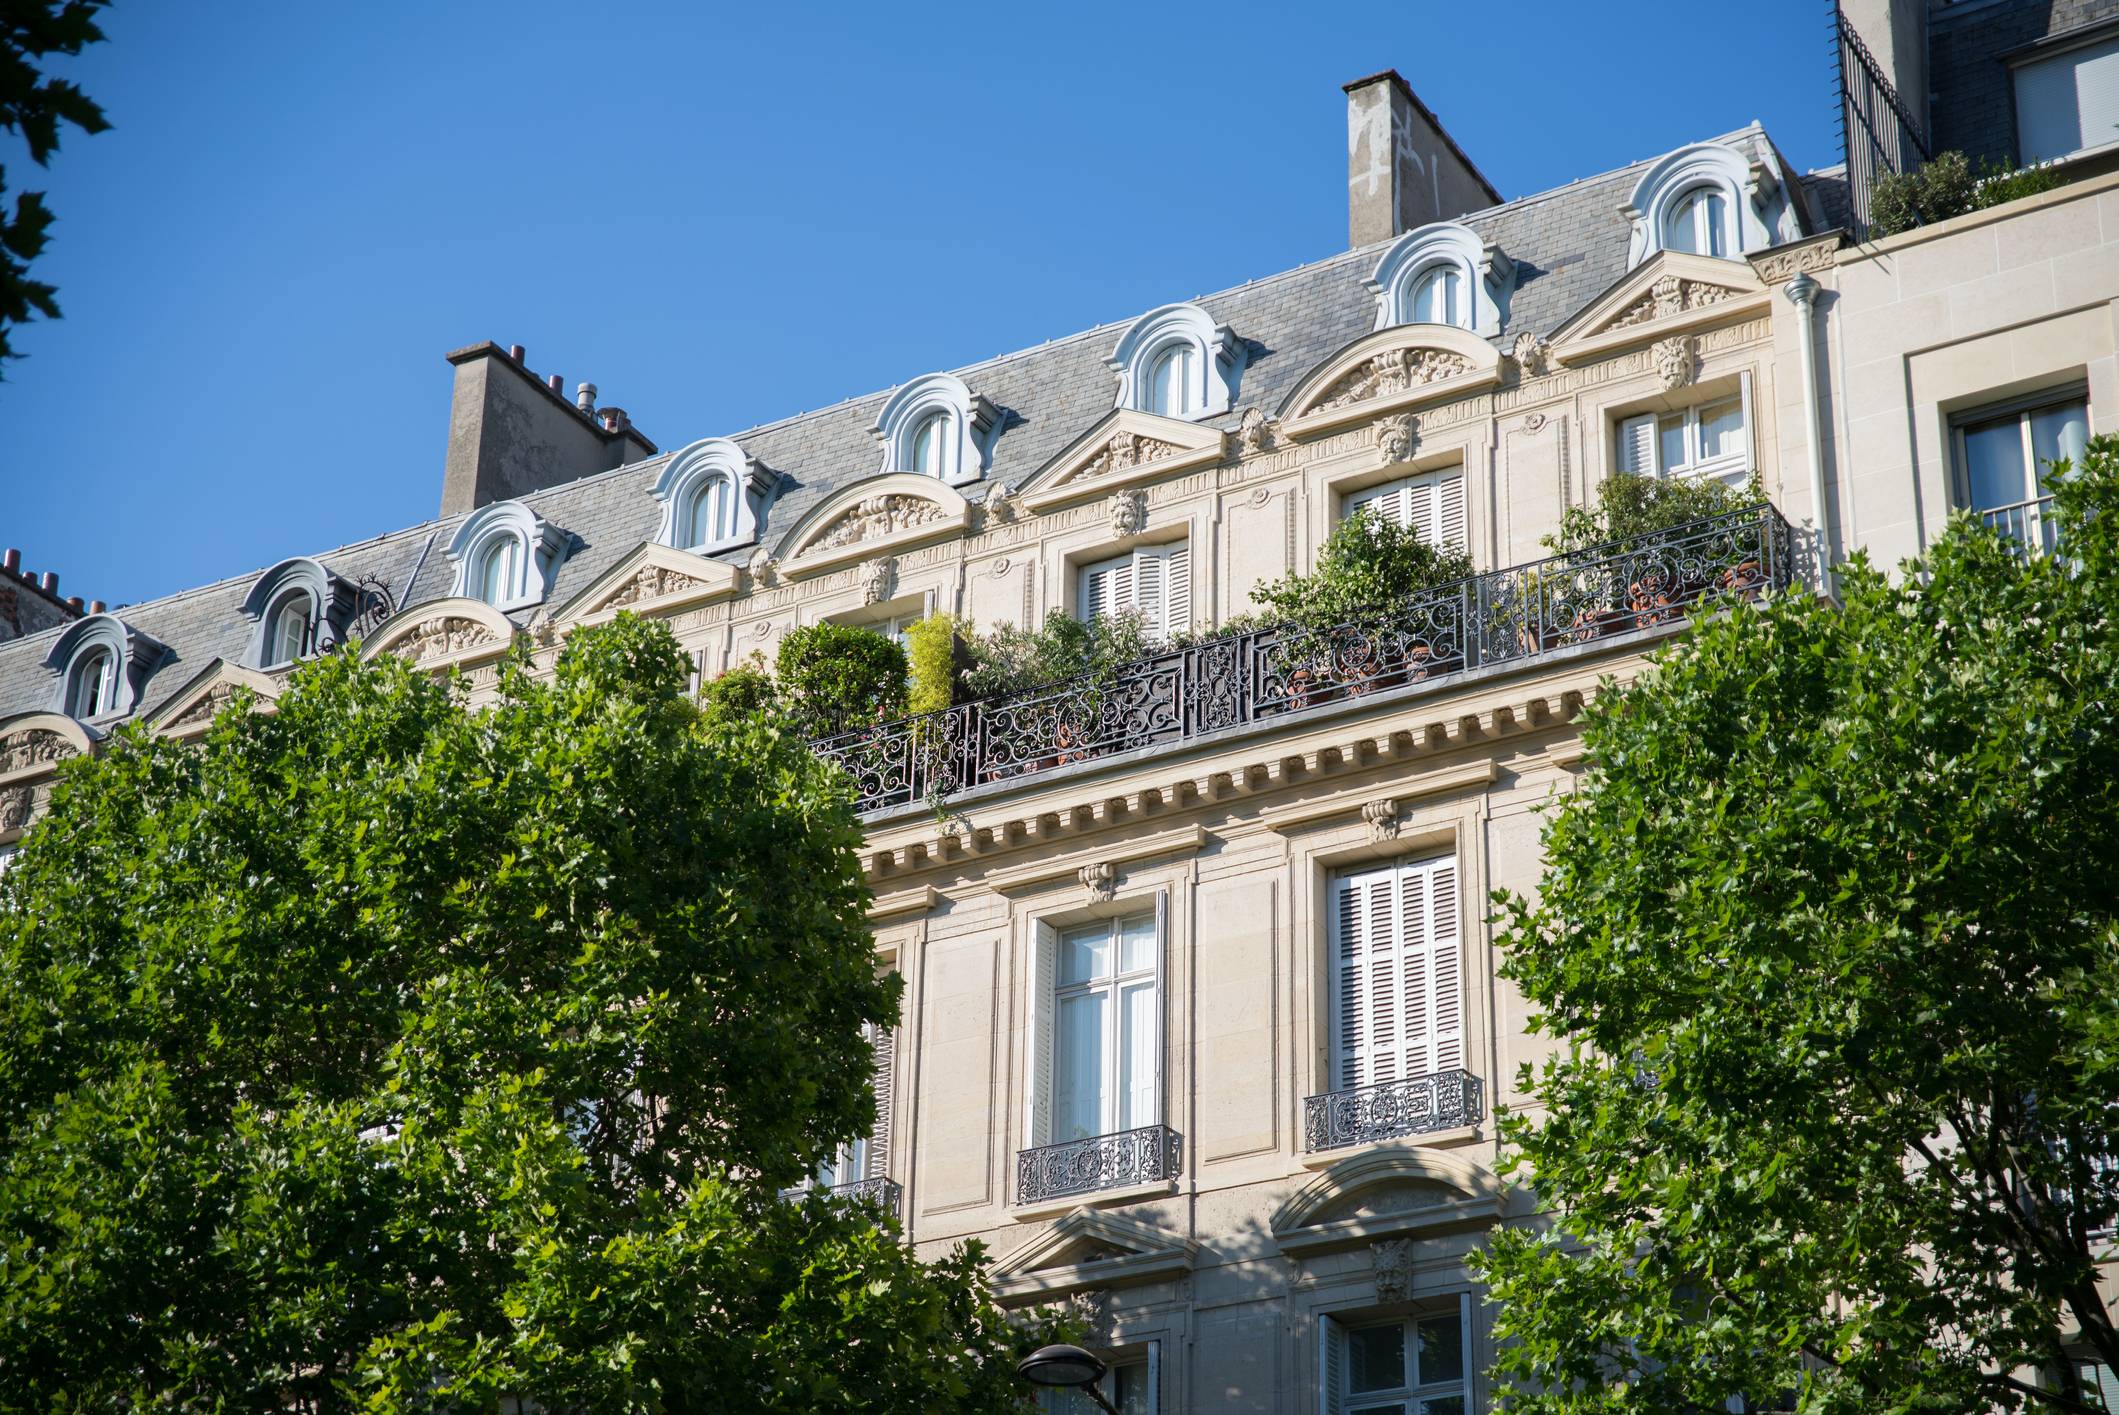 Appartement en Ile-de-France pour un projet d’achat immobilier